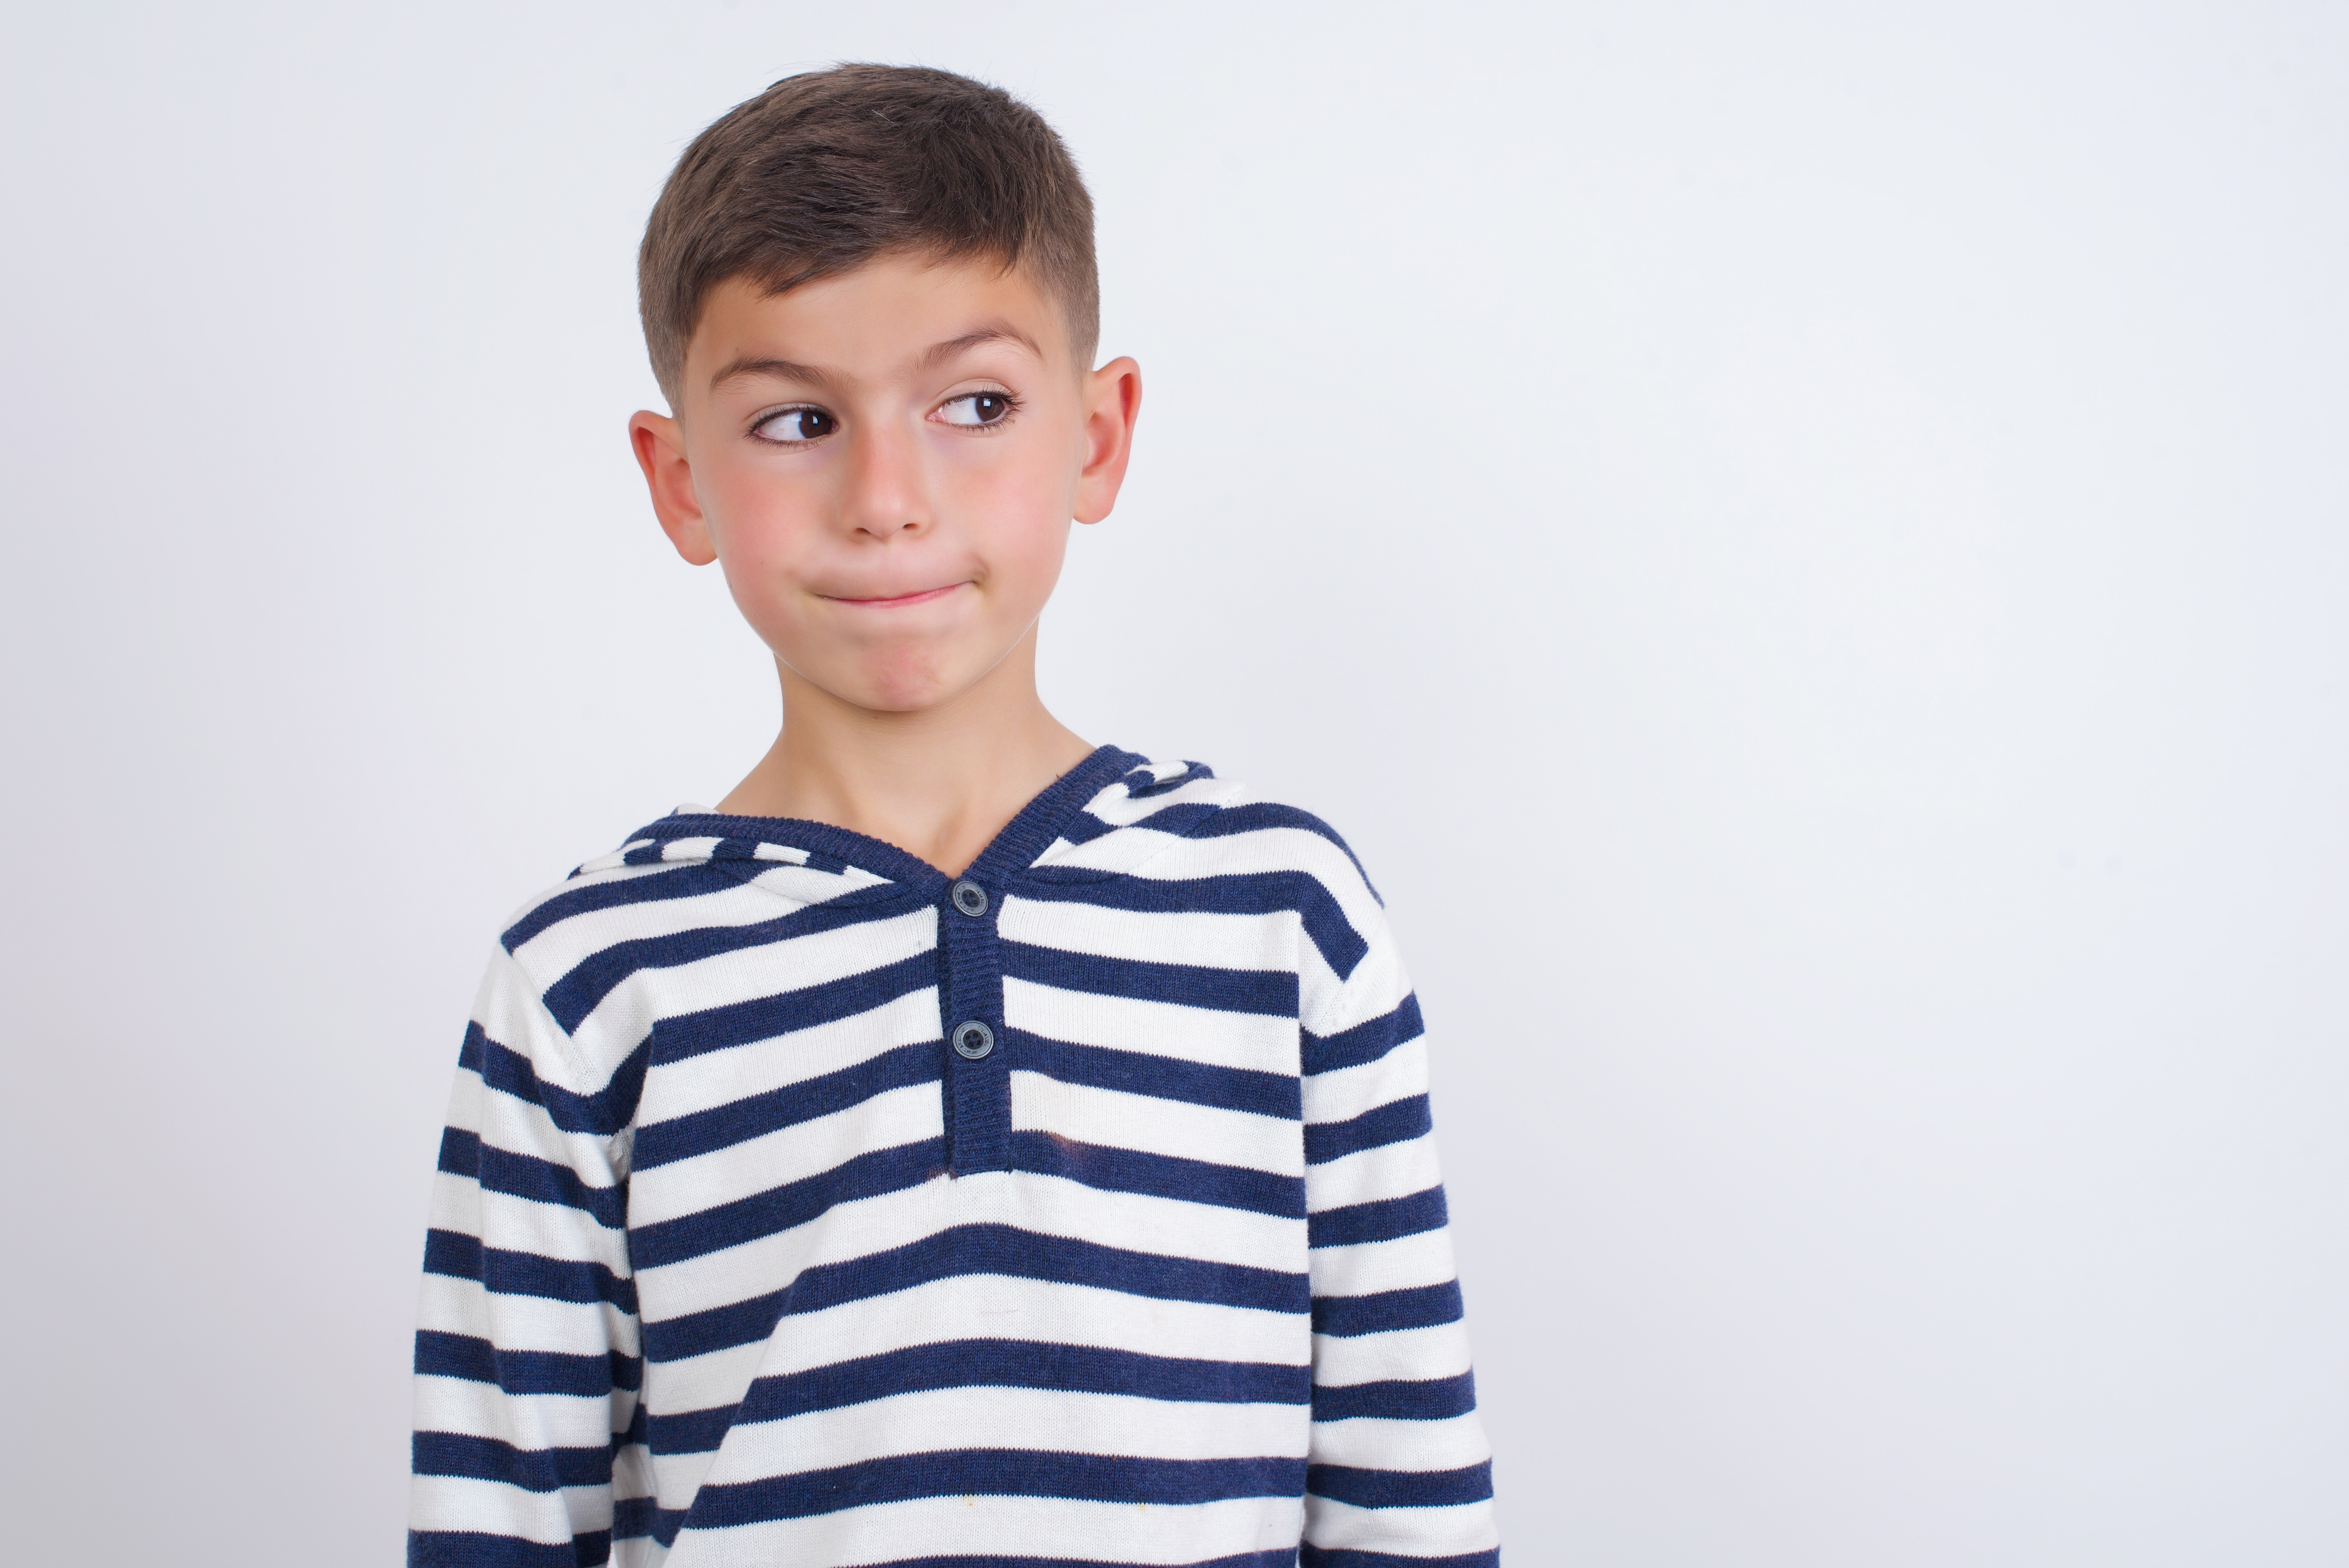 Un jeune garçon perplexe | Source : Shutterstock